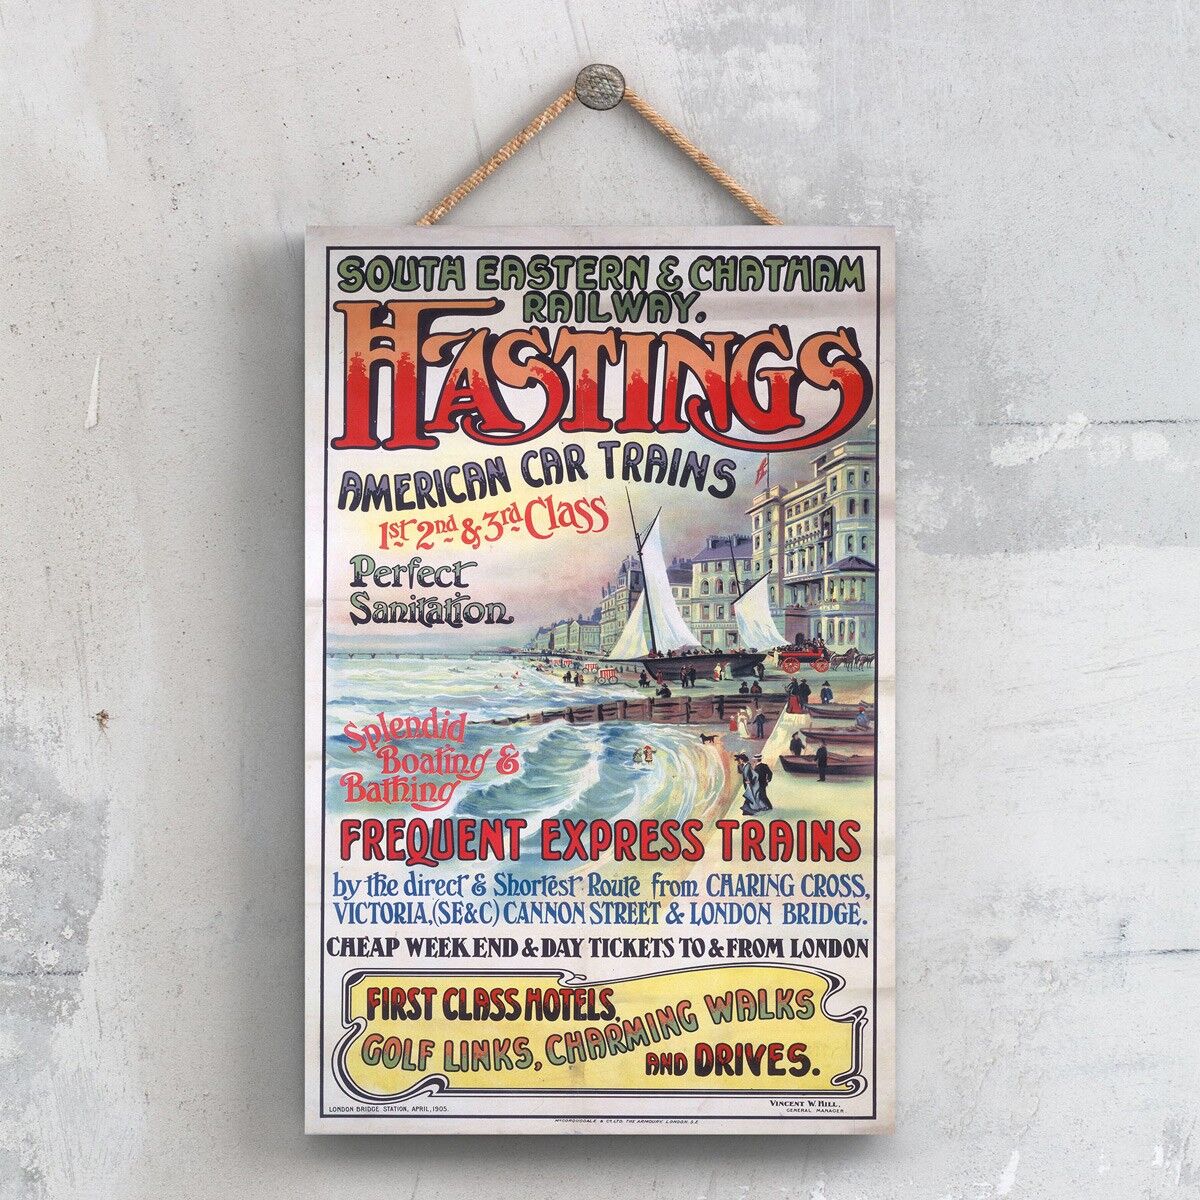 P0430 - Hastings American Car Trains Original National Railway Poster auf einer Plakette im Vintage-Dekor